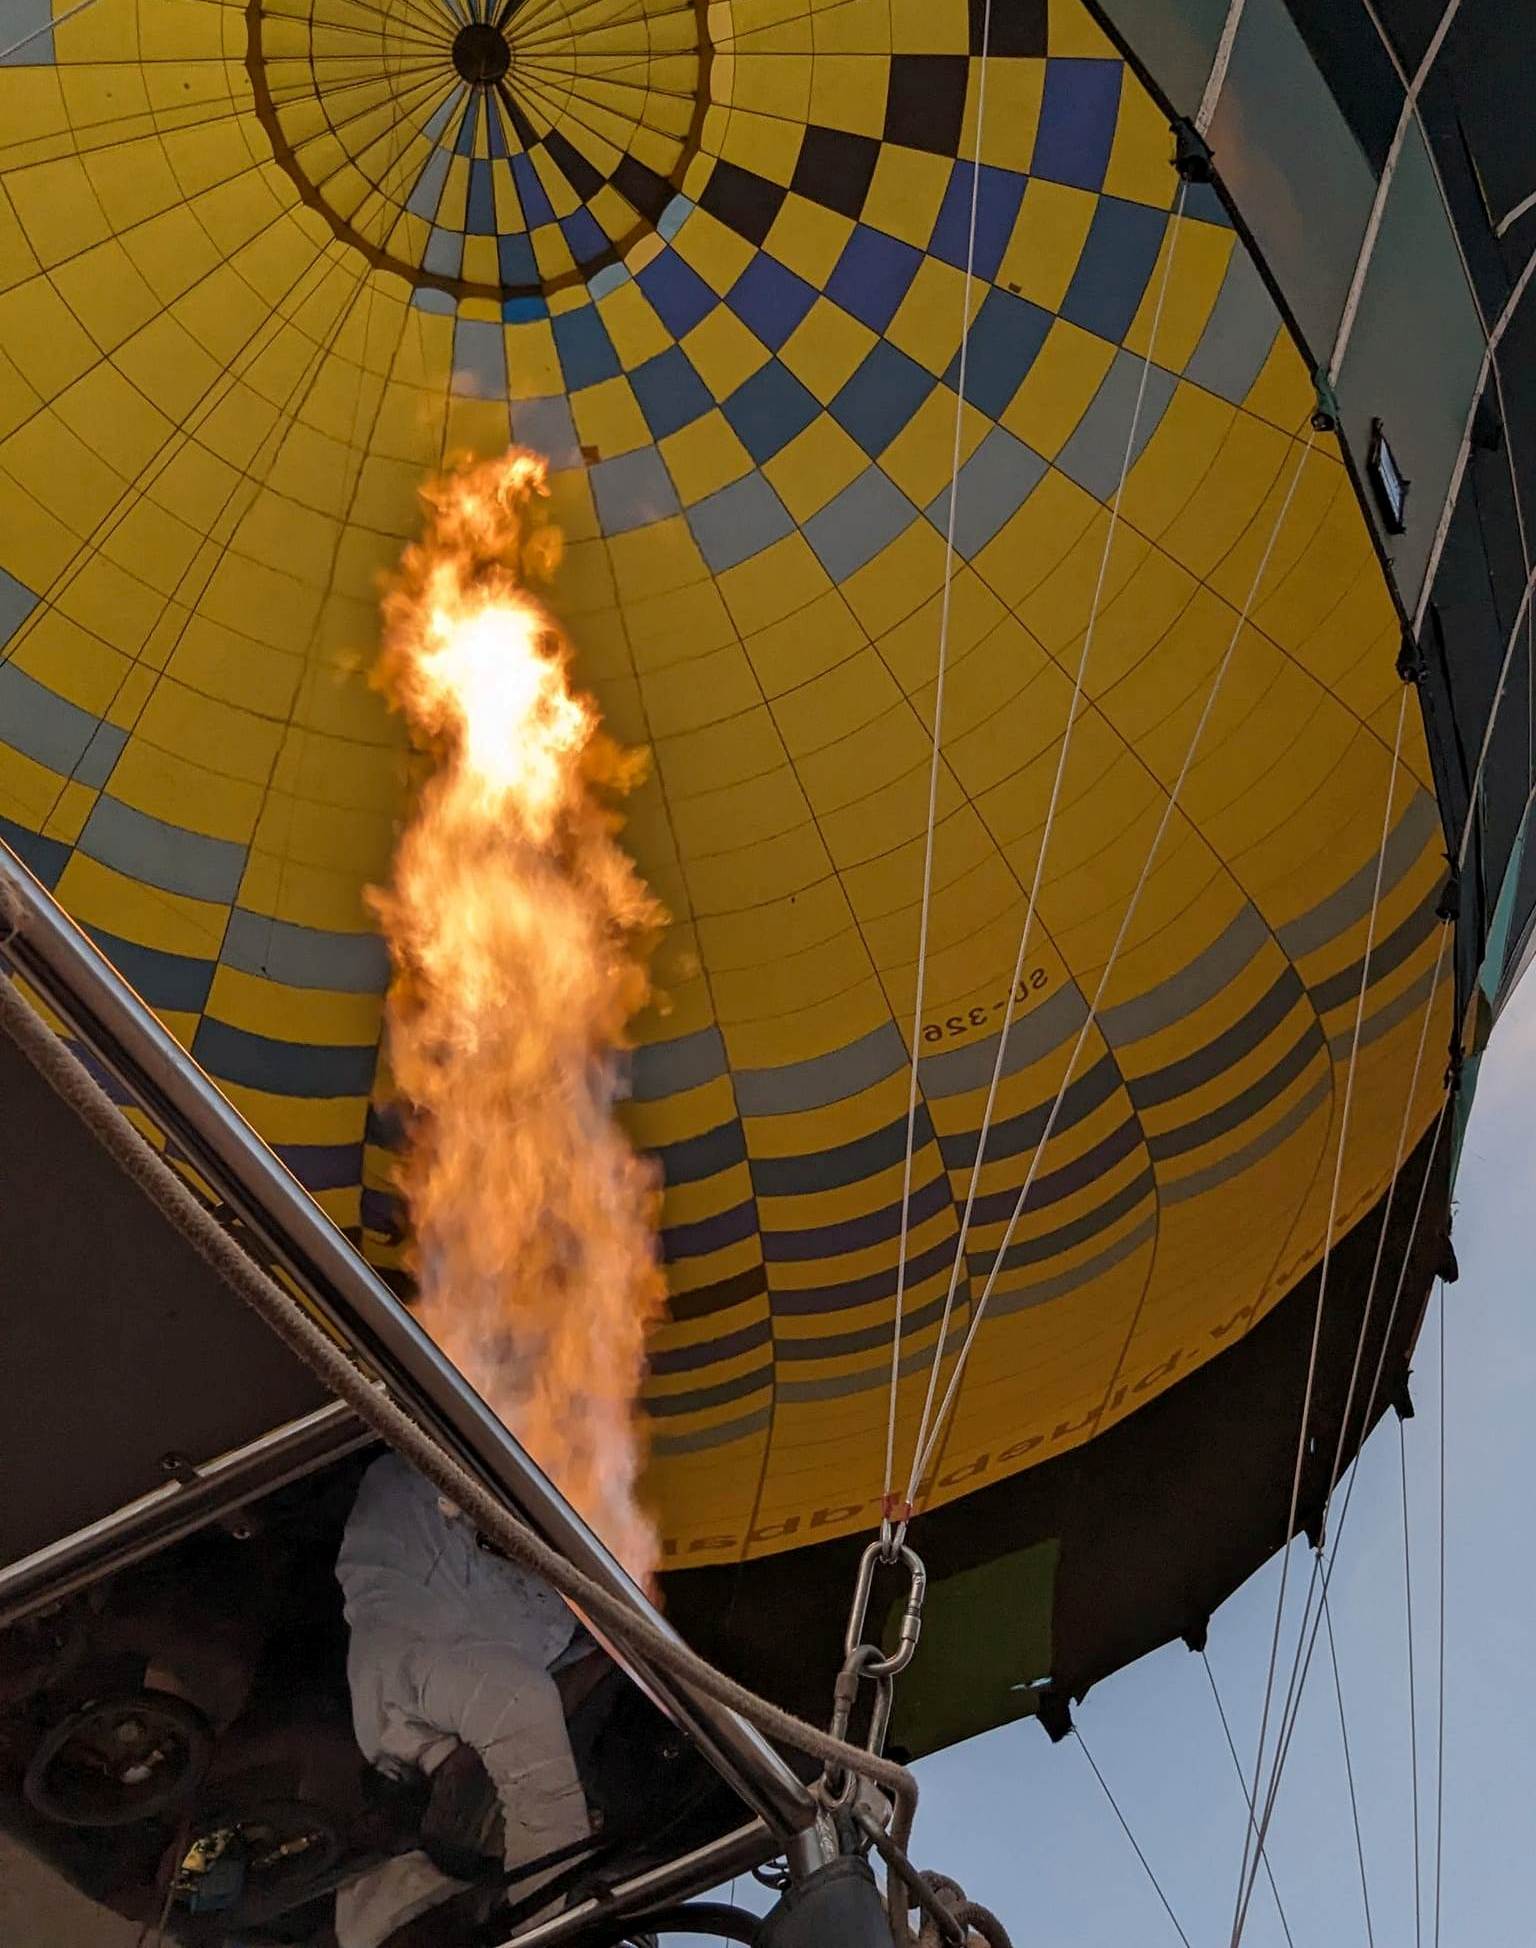 ضخ الهواء الساخن فى البالونات قبل التحليق